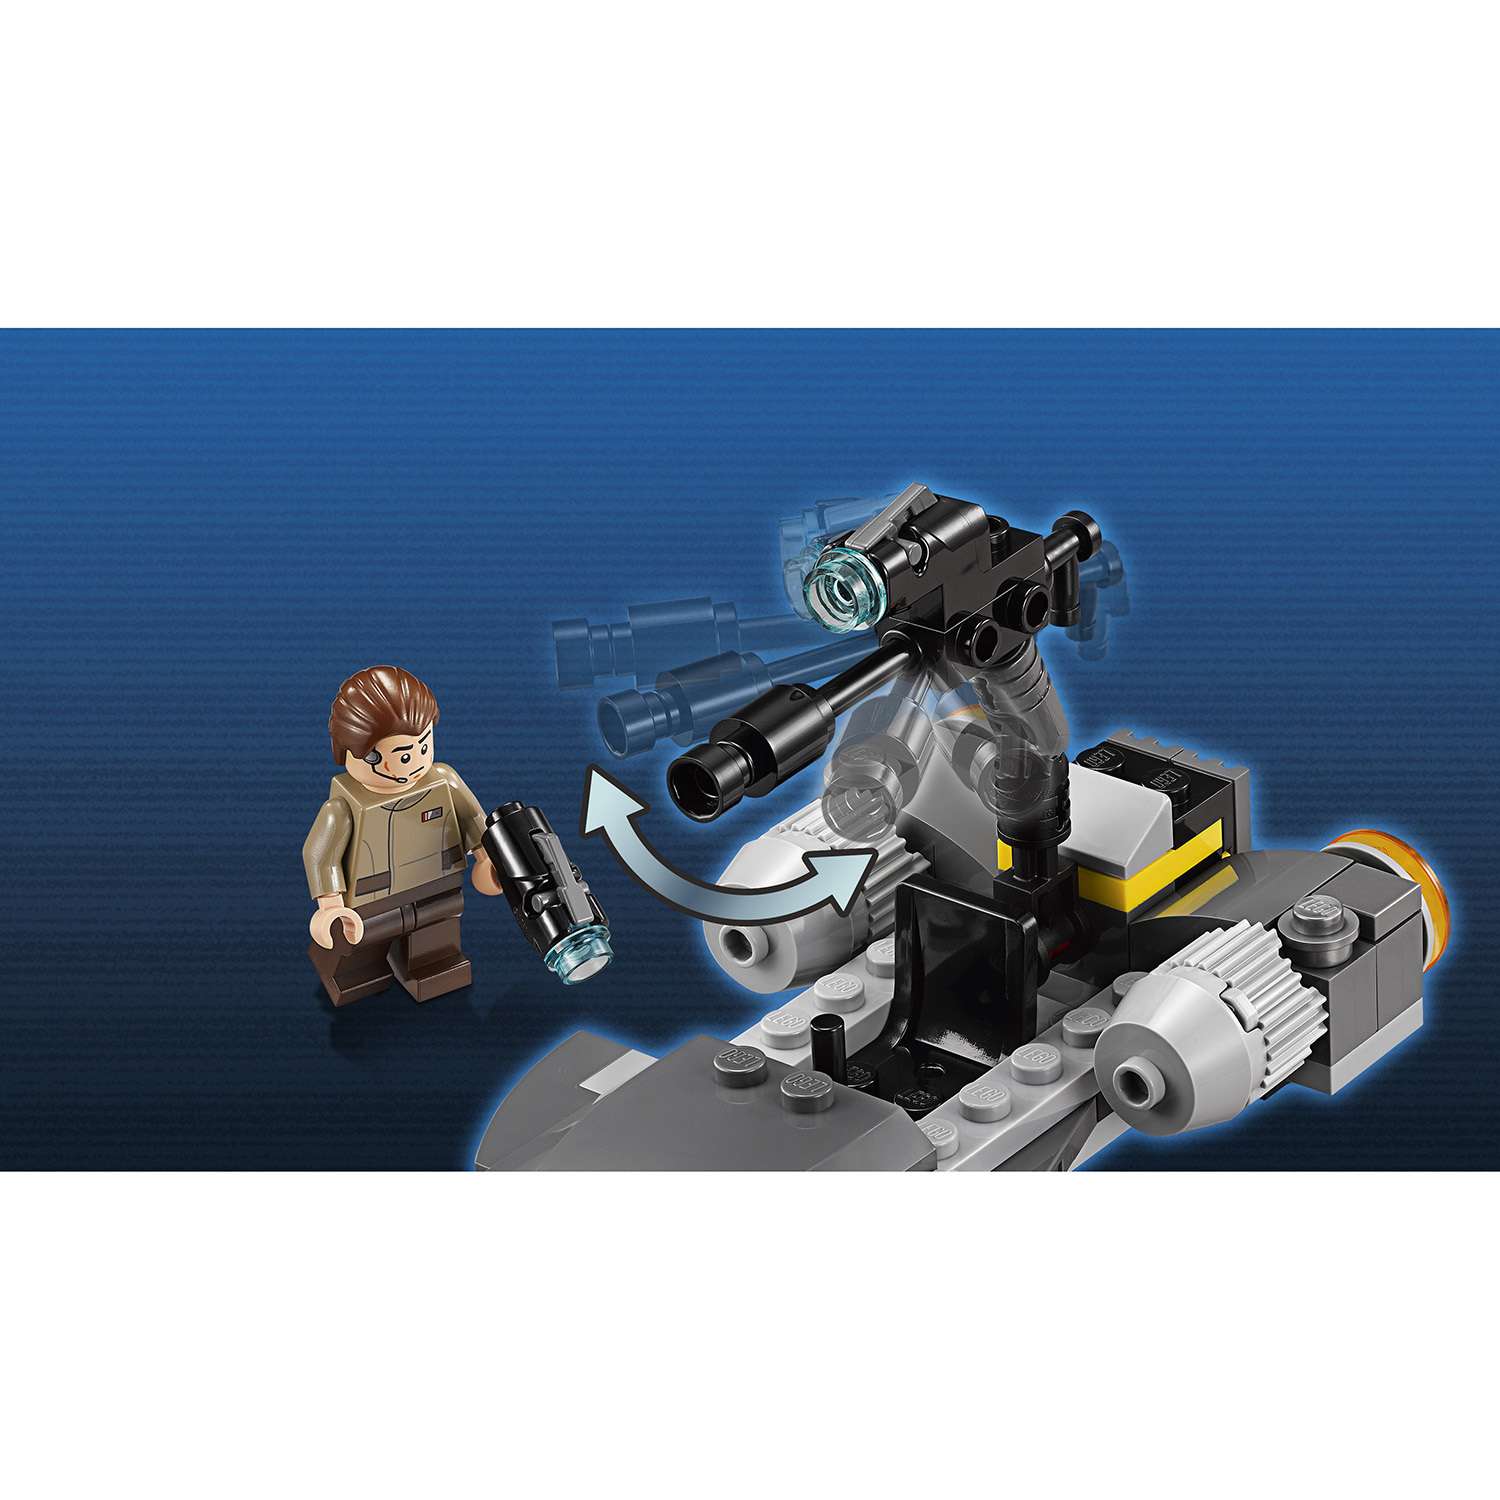 Конструктор LEGO Star Wars TM Боевой набор Сопротивления (75131) - фото 6